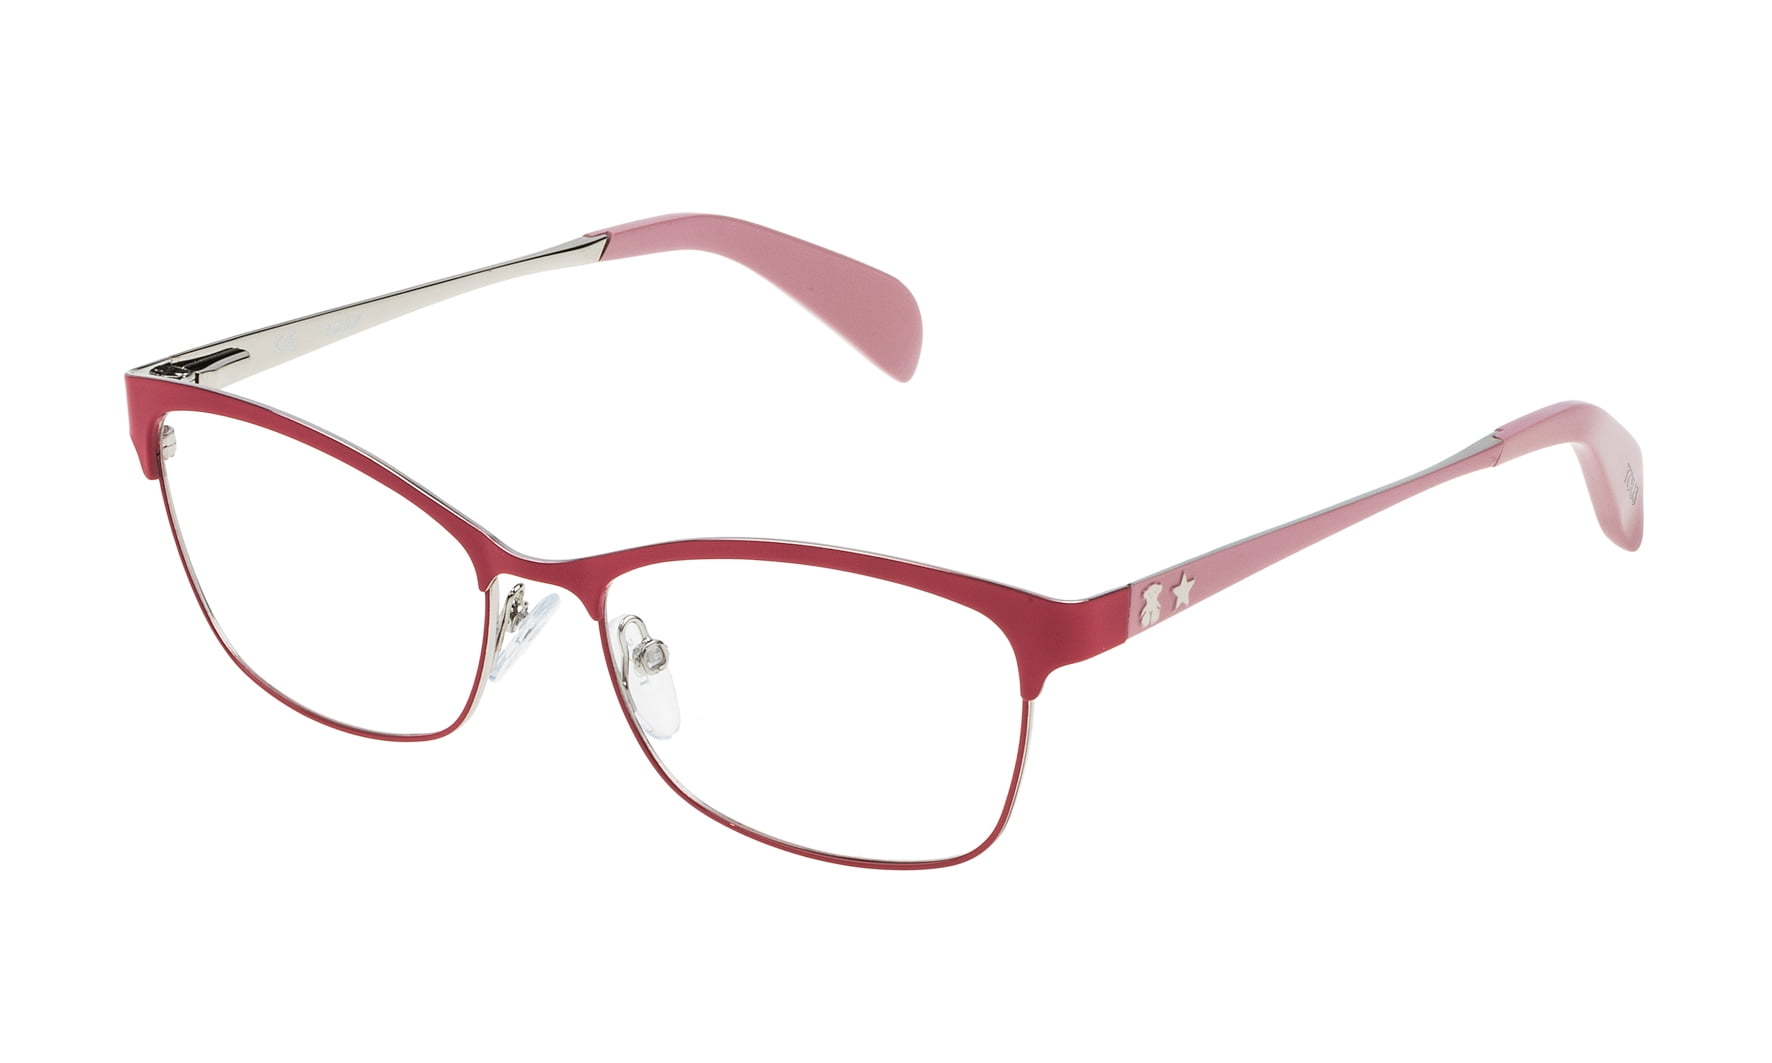 Glasses & Structures Prescription Glasses – AB Tendências e Novidades